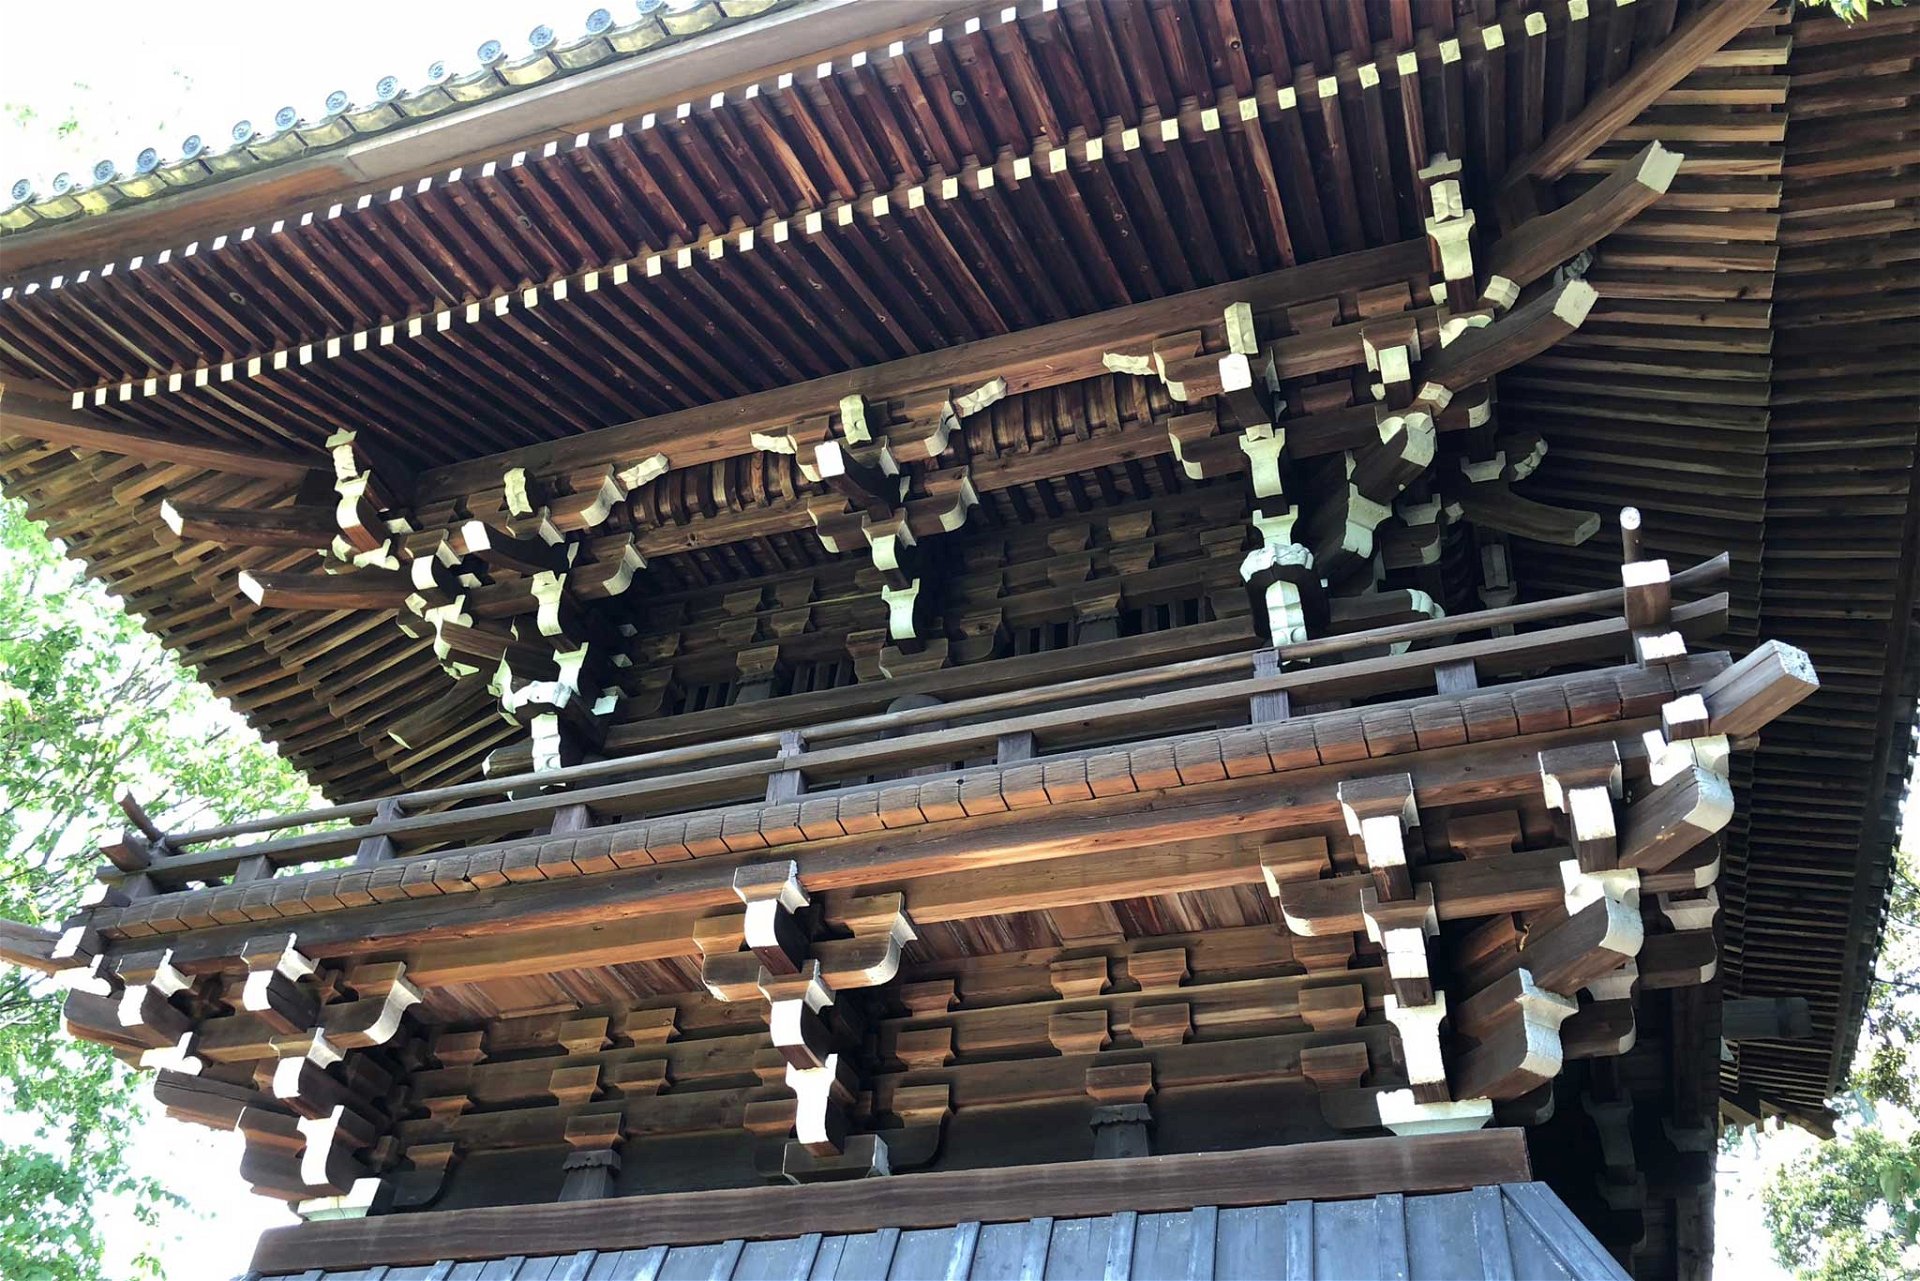 Das Dach des Tempels mit faszinierenden Holzschnitzereien.  